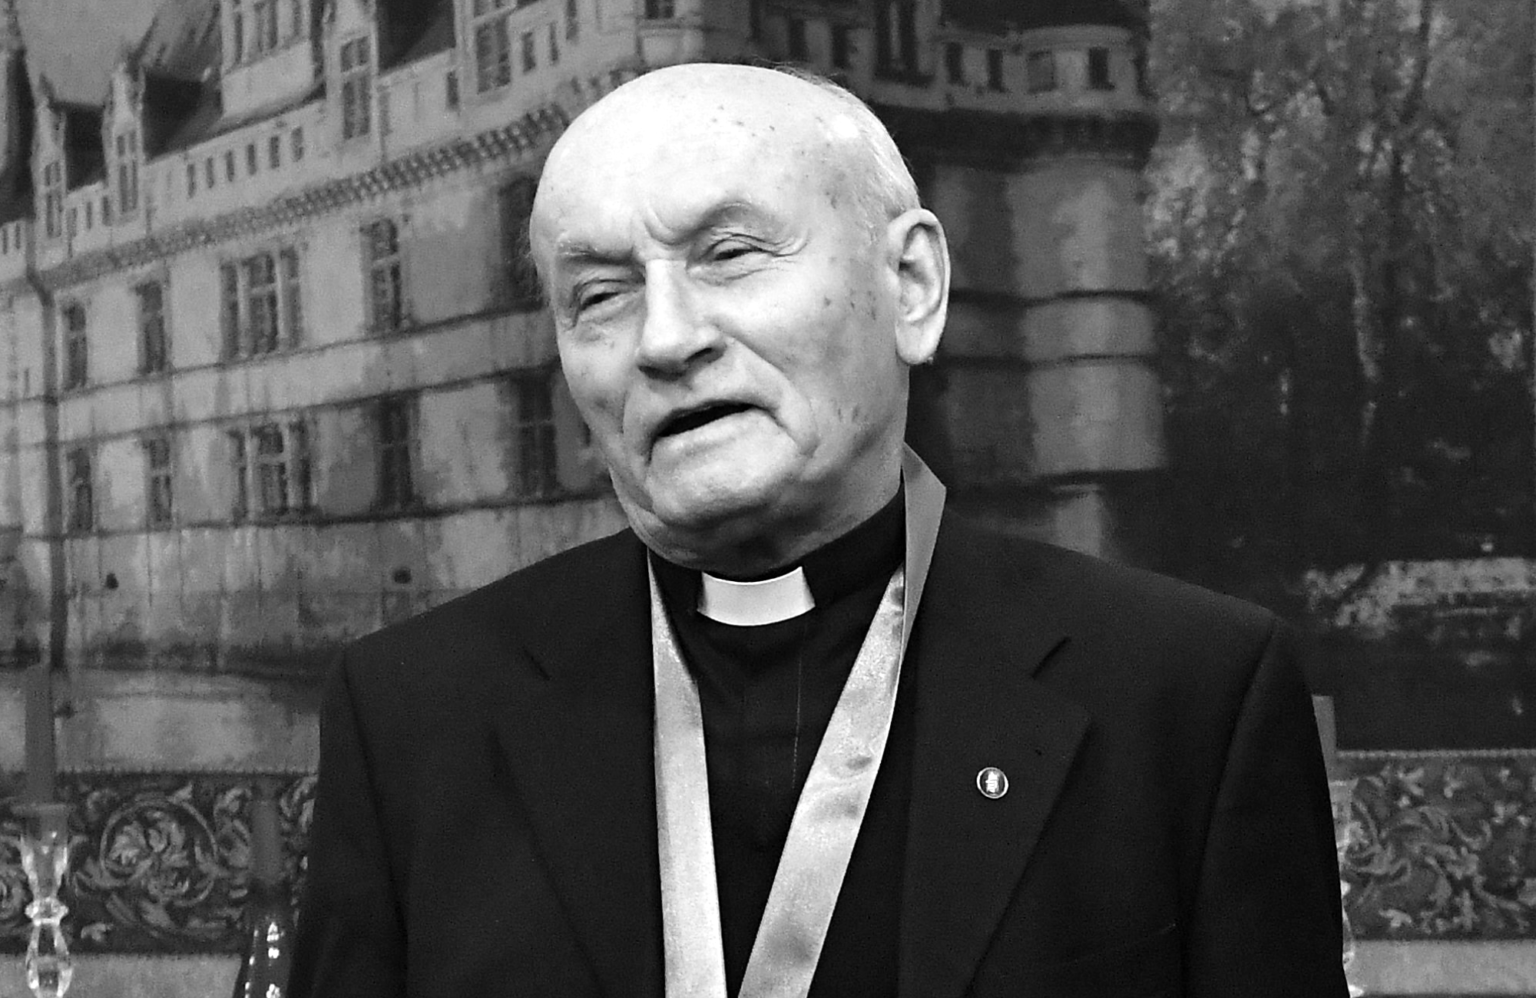 Varjú Imre atya vasmisés pap mindig támogatta a keresztény könnyűzenét.